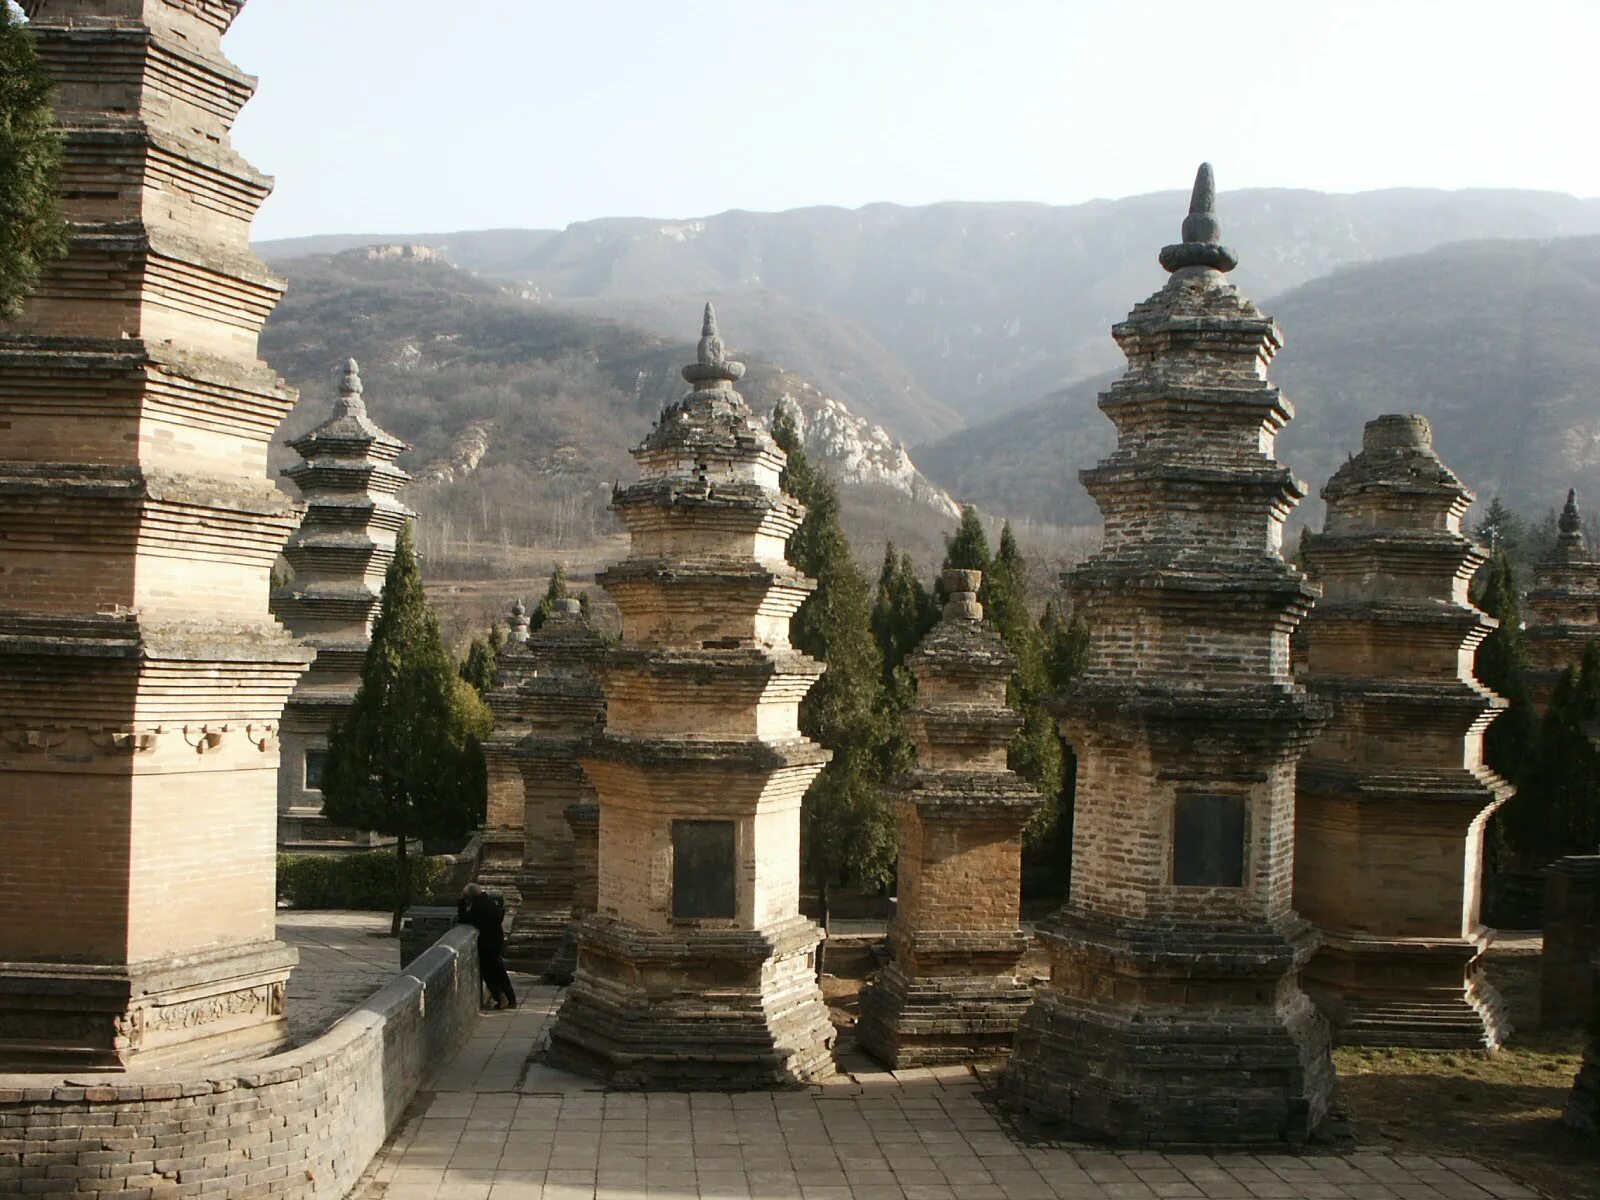 Shaolin temple. Храм Шаолинь Хэнань. Монастырь Шаолинь. Монастырь Шаолинь Китай. Шаолинь Чжэнчжоу.